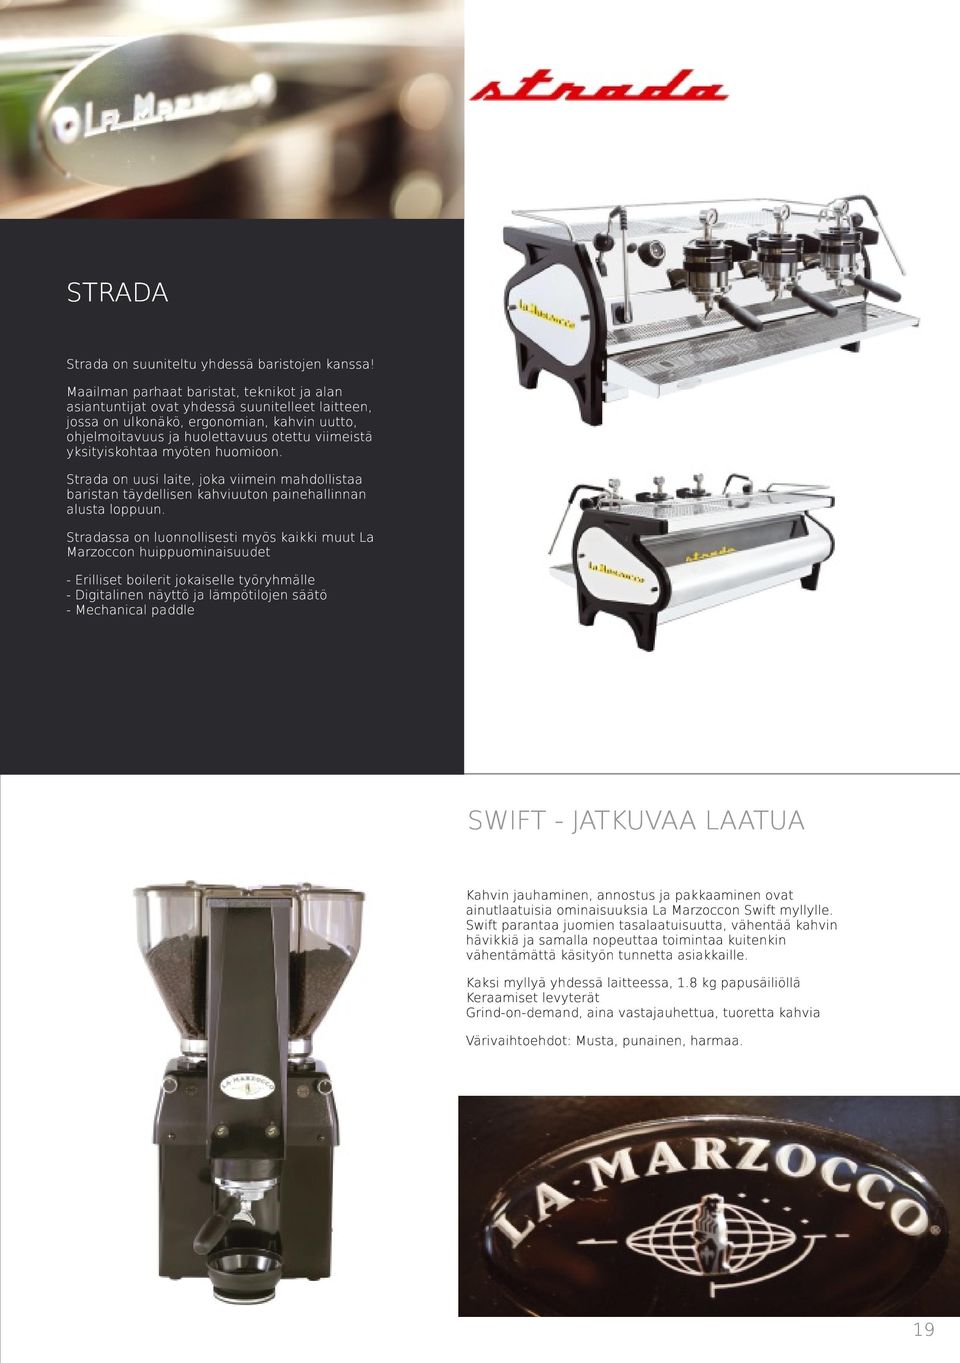 yksityiskohtaa myöten huomioon. Strada on uusi laite, joka viimein mahdollistaa baristan täydellisen kahviuuton painehallinnan alusta loppuun.